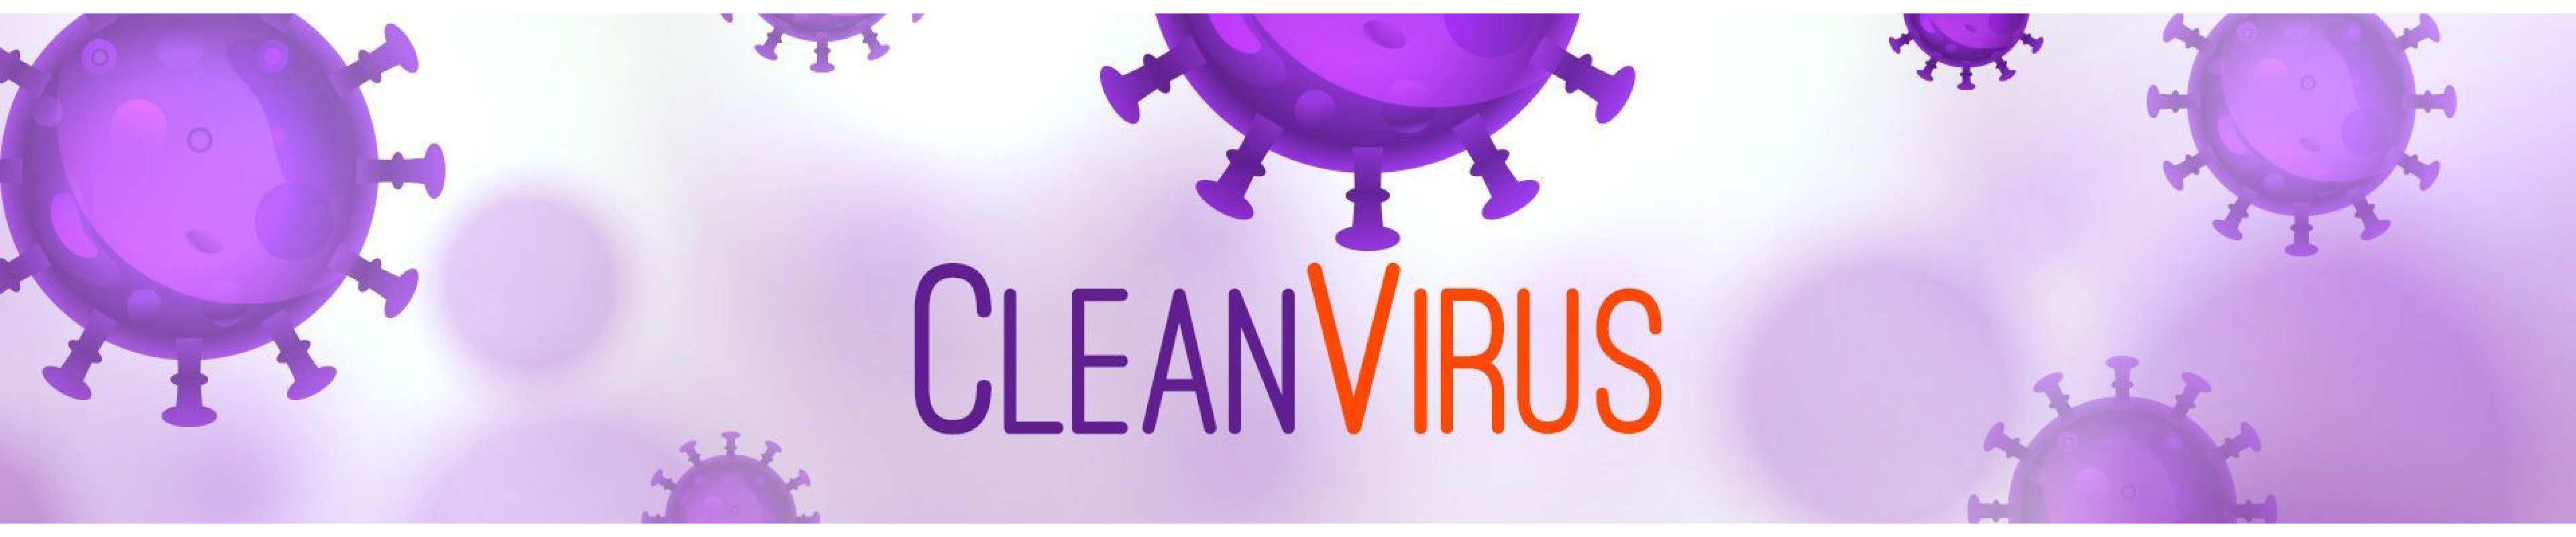 quick cleaner virus